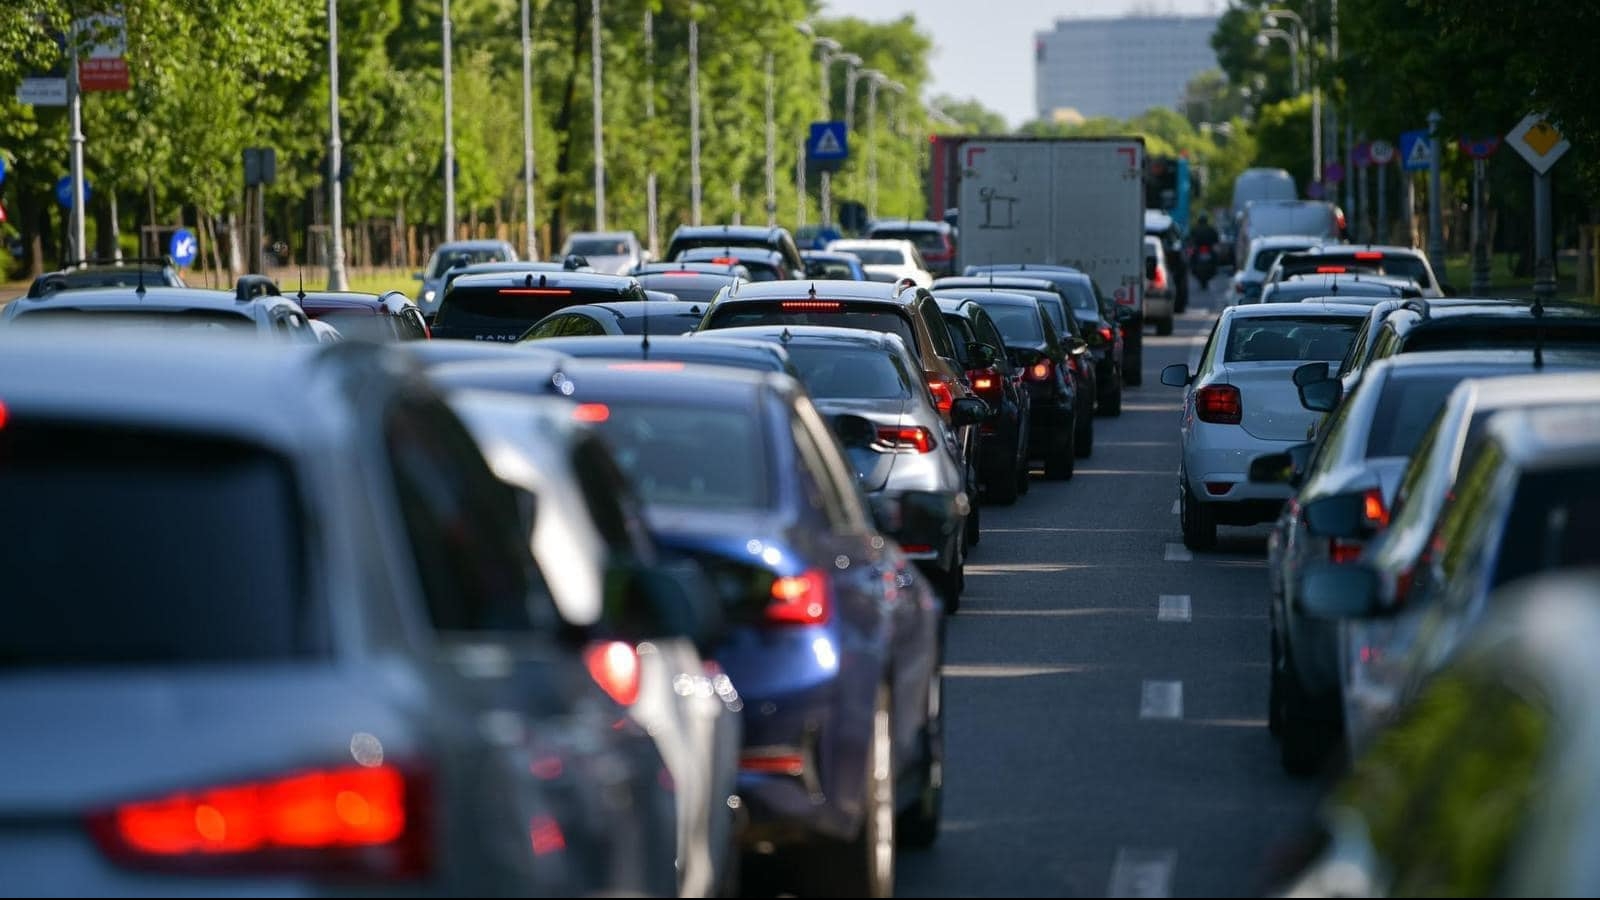 Restricţii de trafic în București